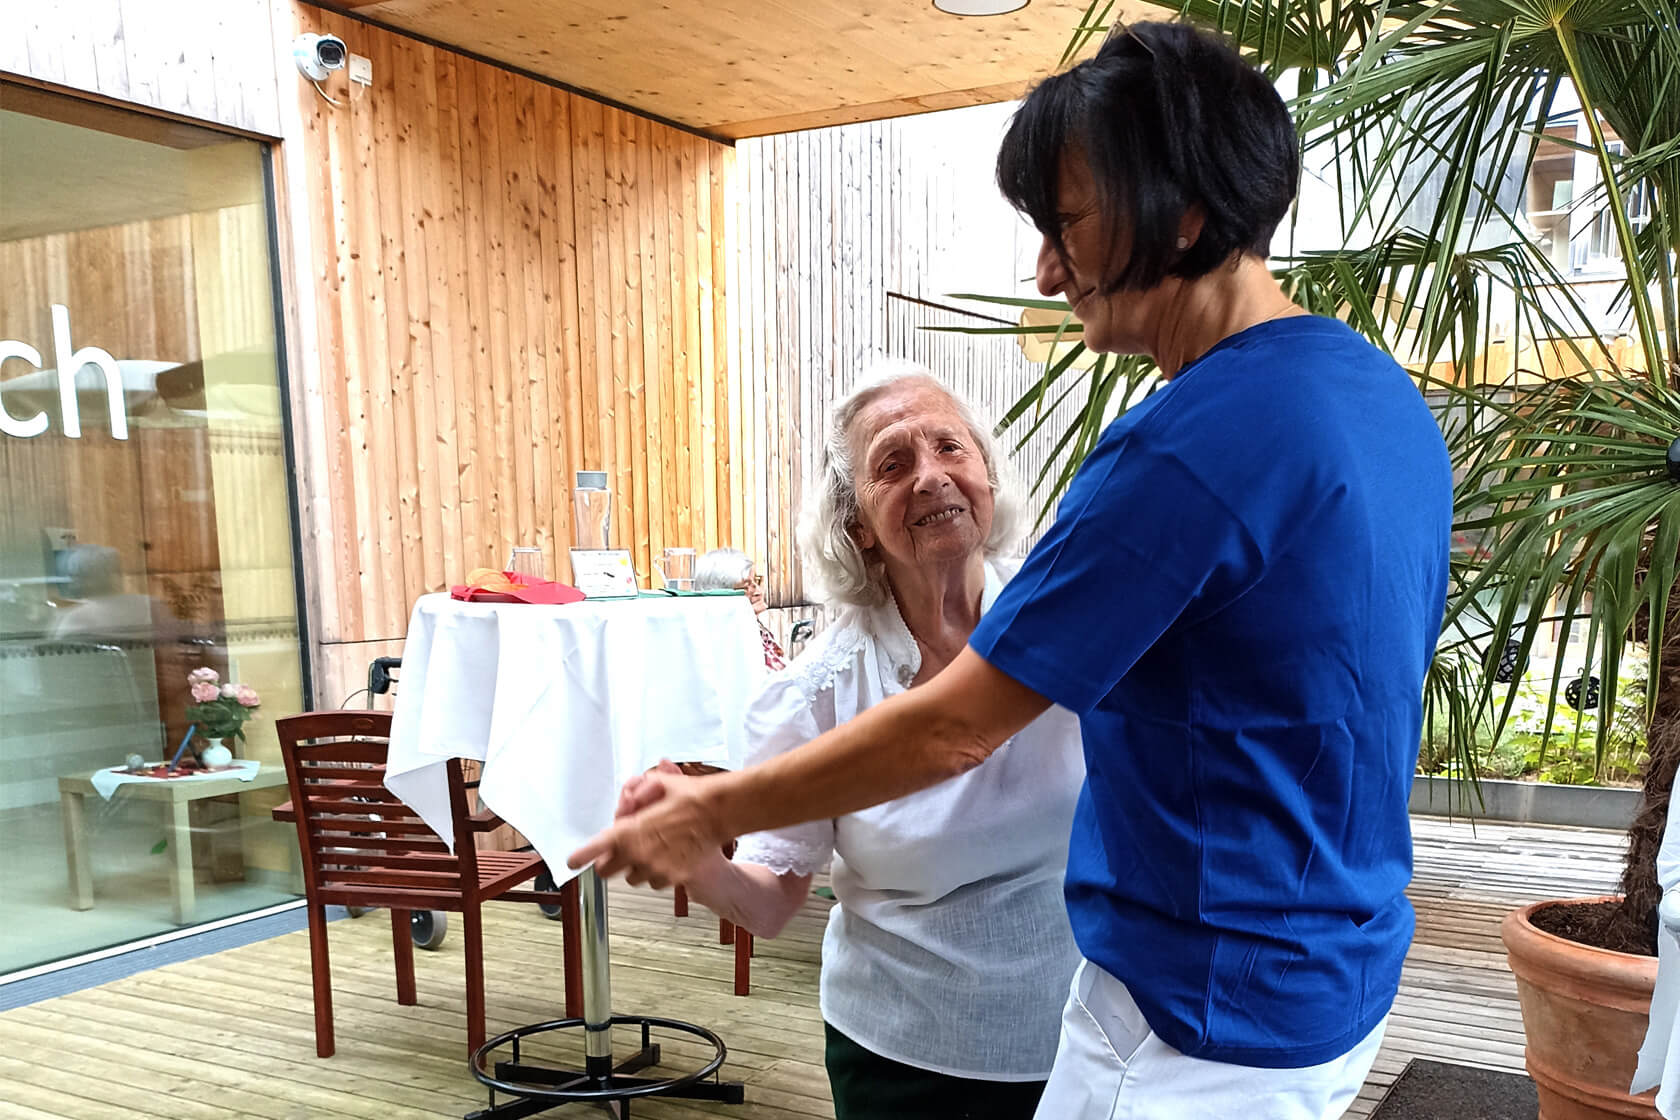 Sommerfest des Pflegewohnheims Erika Horn an dem eine Bewohnerin mit weißer Bluse mit einer Mitarbeiterin im blauen T-Shirt tanzt.